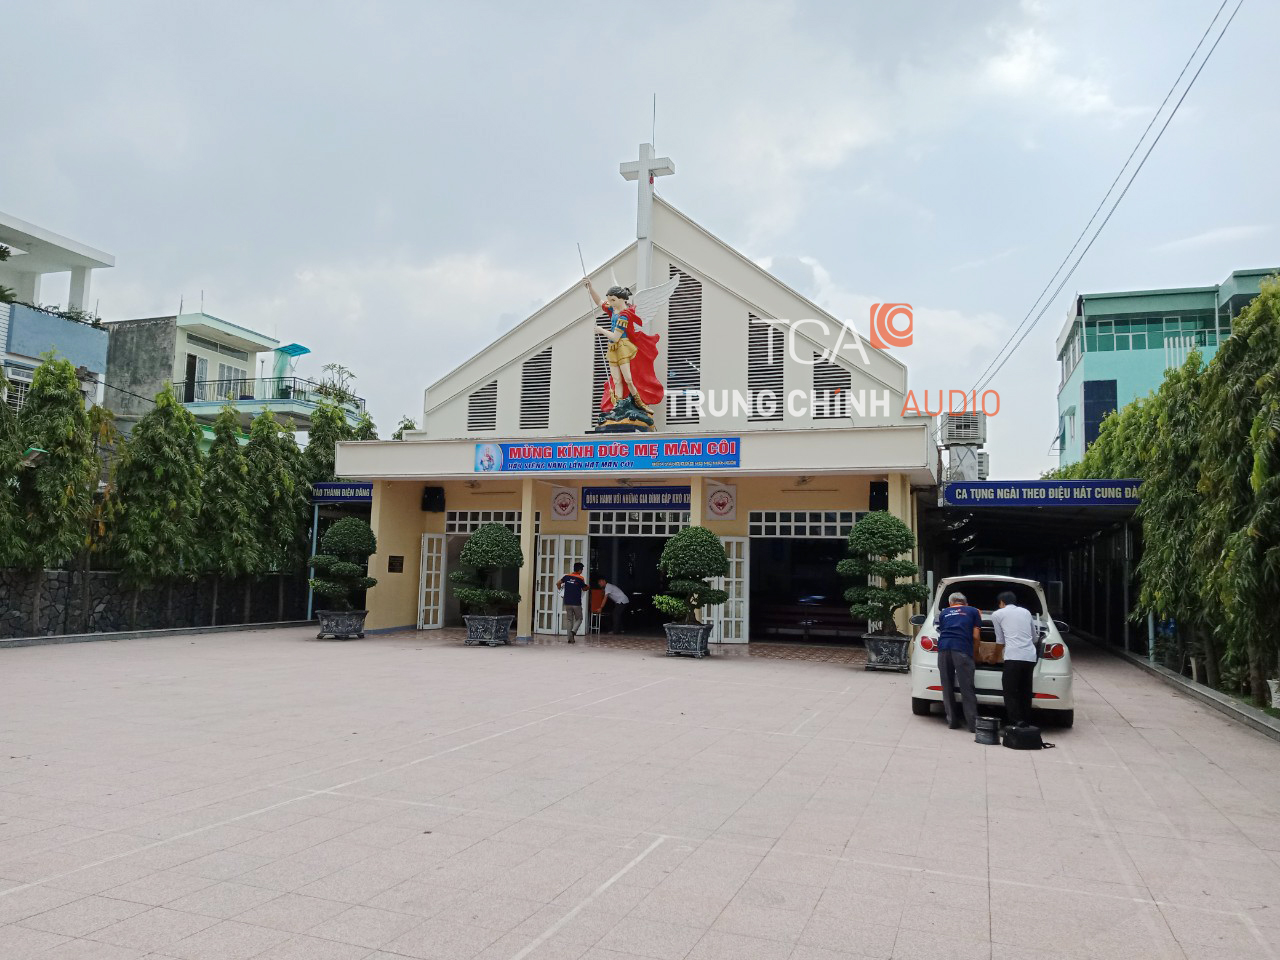 âm thanh nhà thờ Micae Đồng Nai